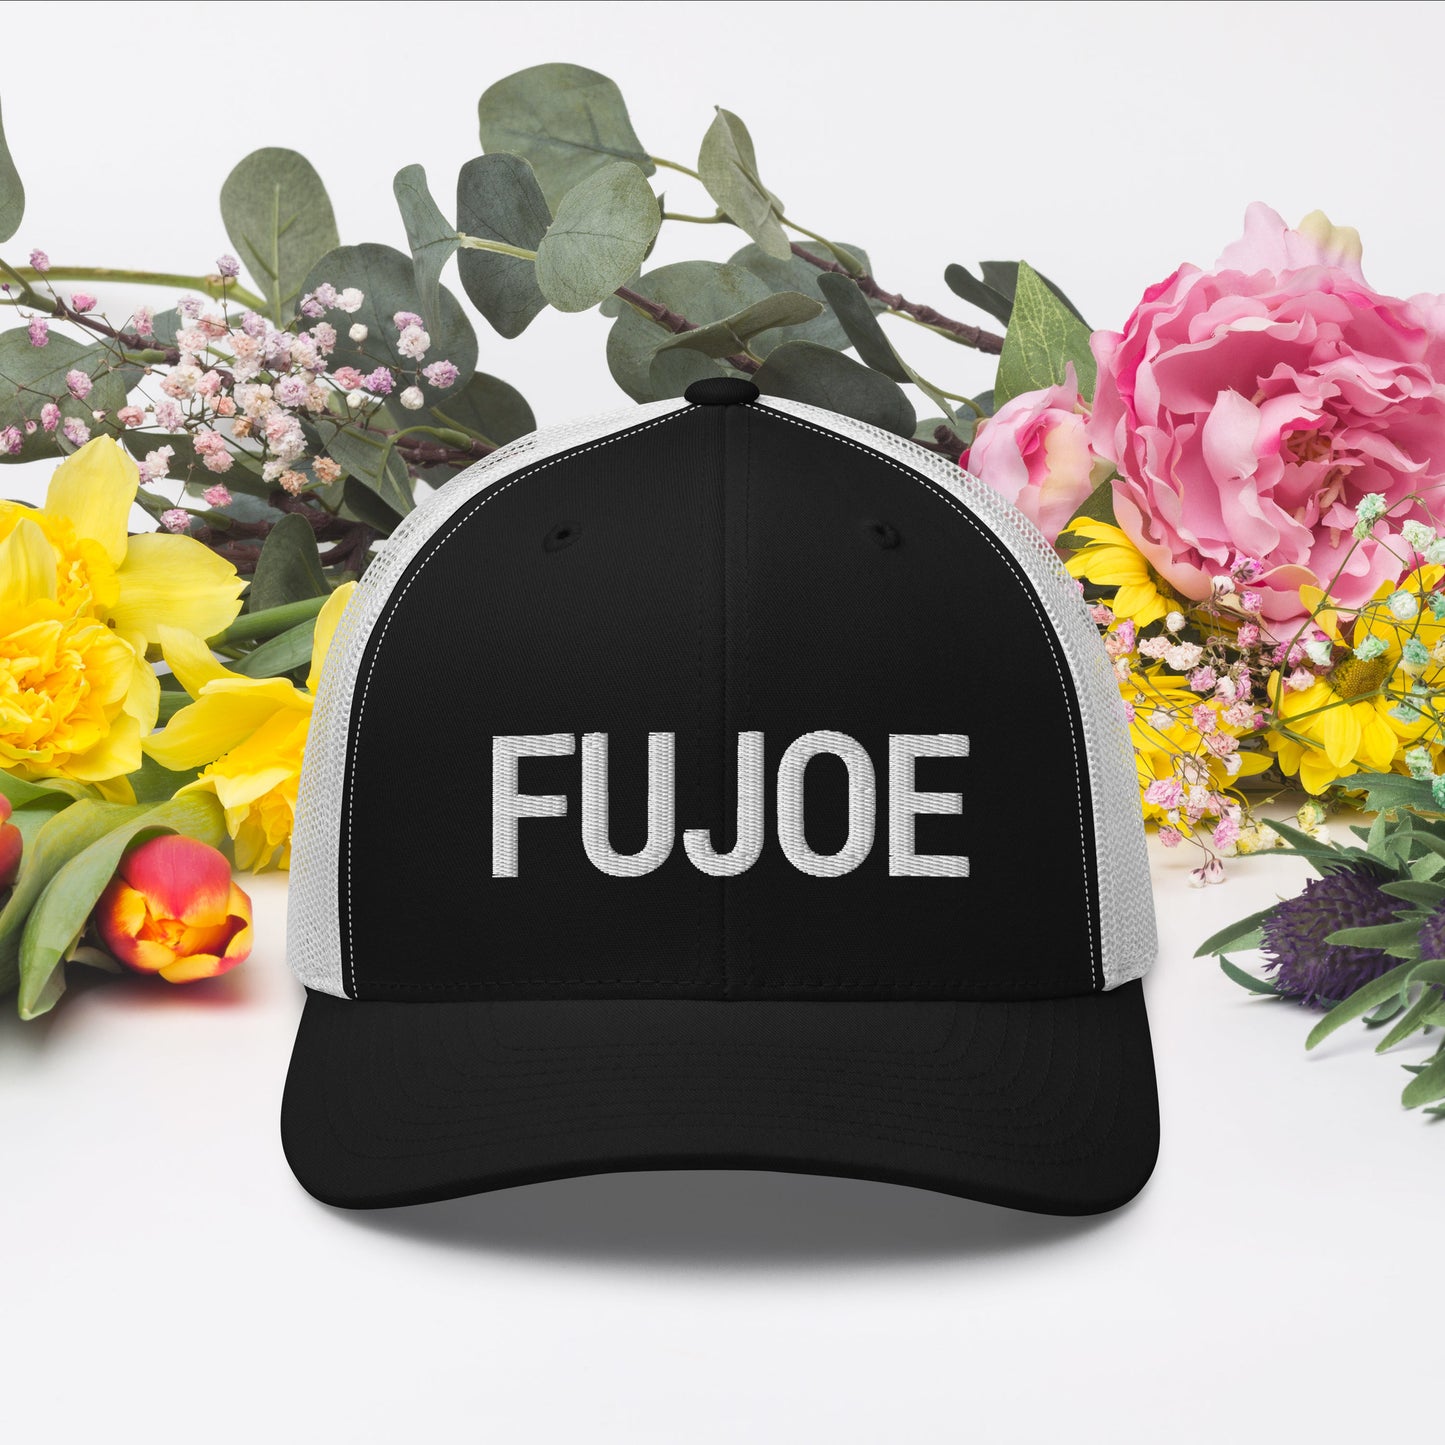 Fujoe Hat / Fujoe Cap /Joe Hat / Fujoe Trucker Cap